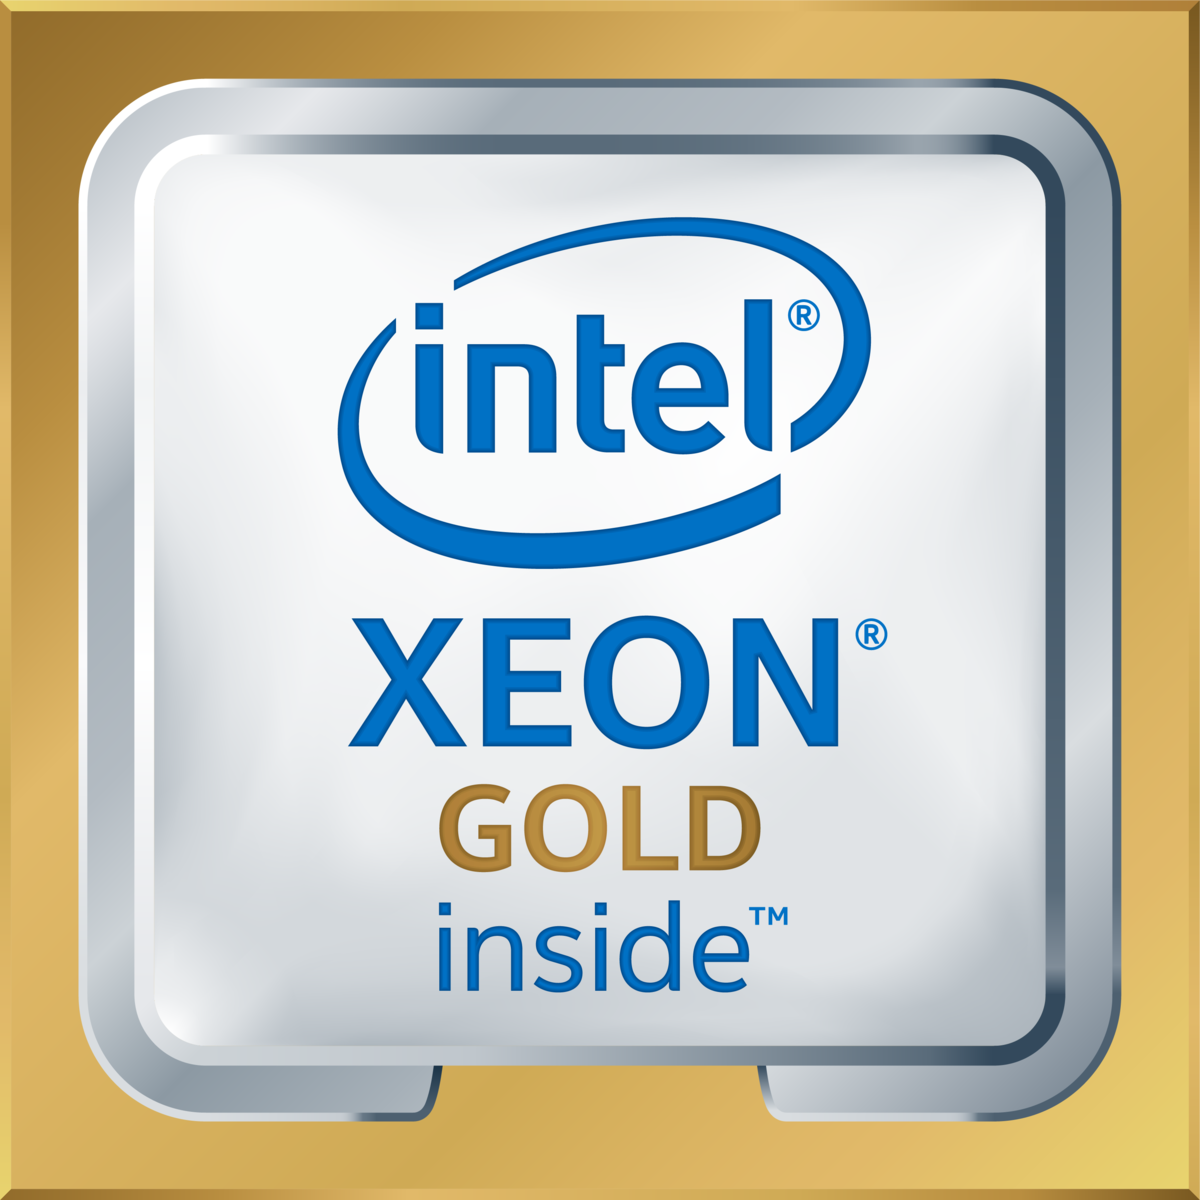 Intel(R) Xeon(R) Gold 6151 CPU @ 3.00GHz's logo